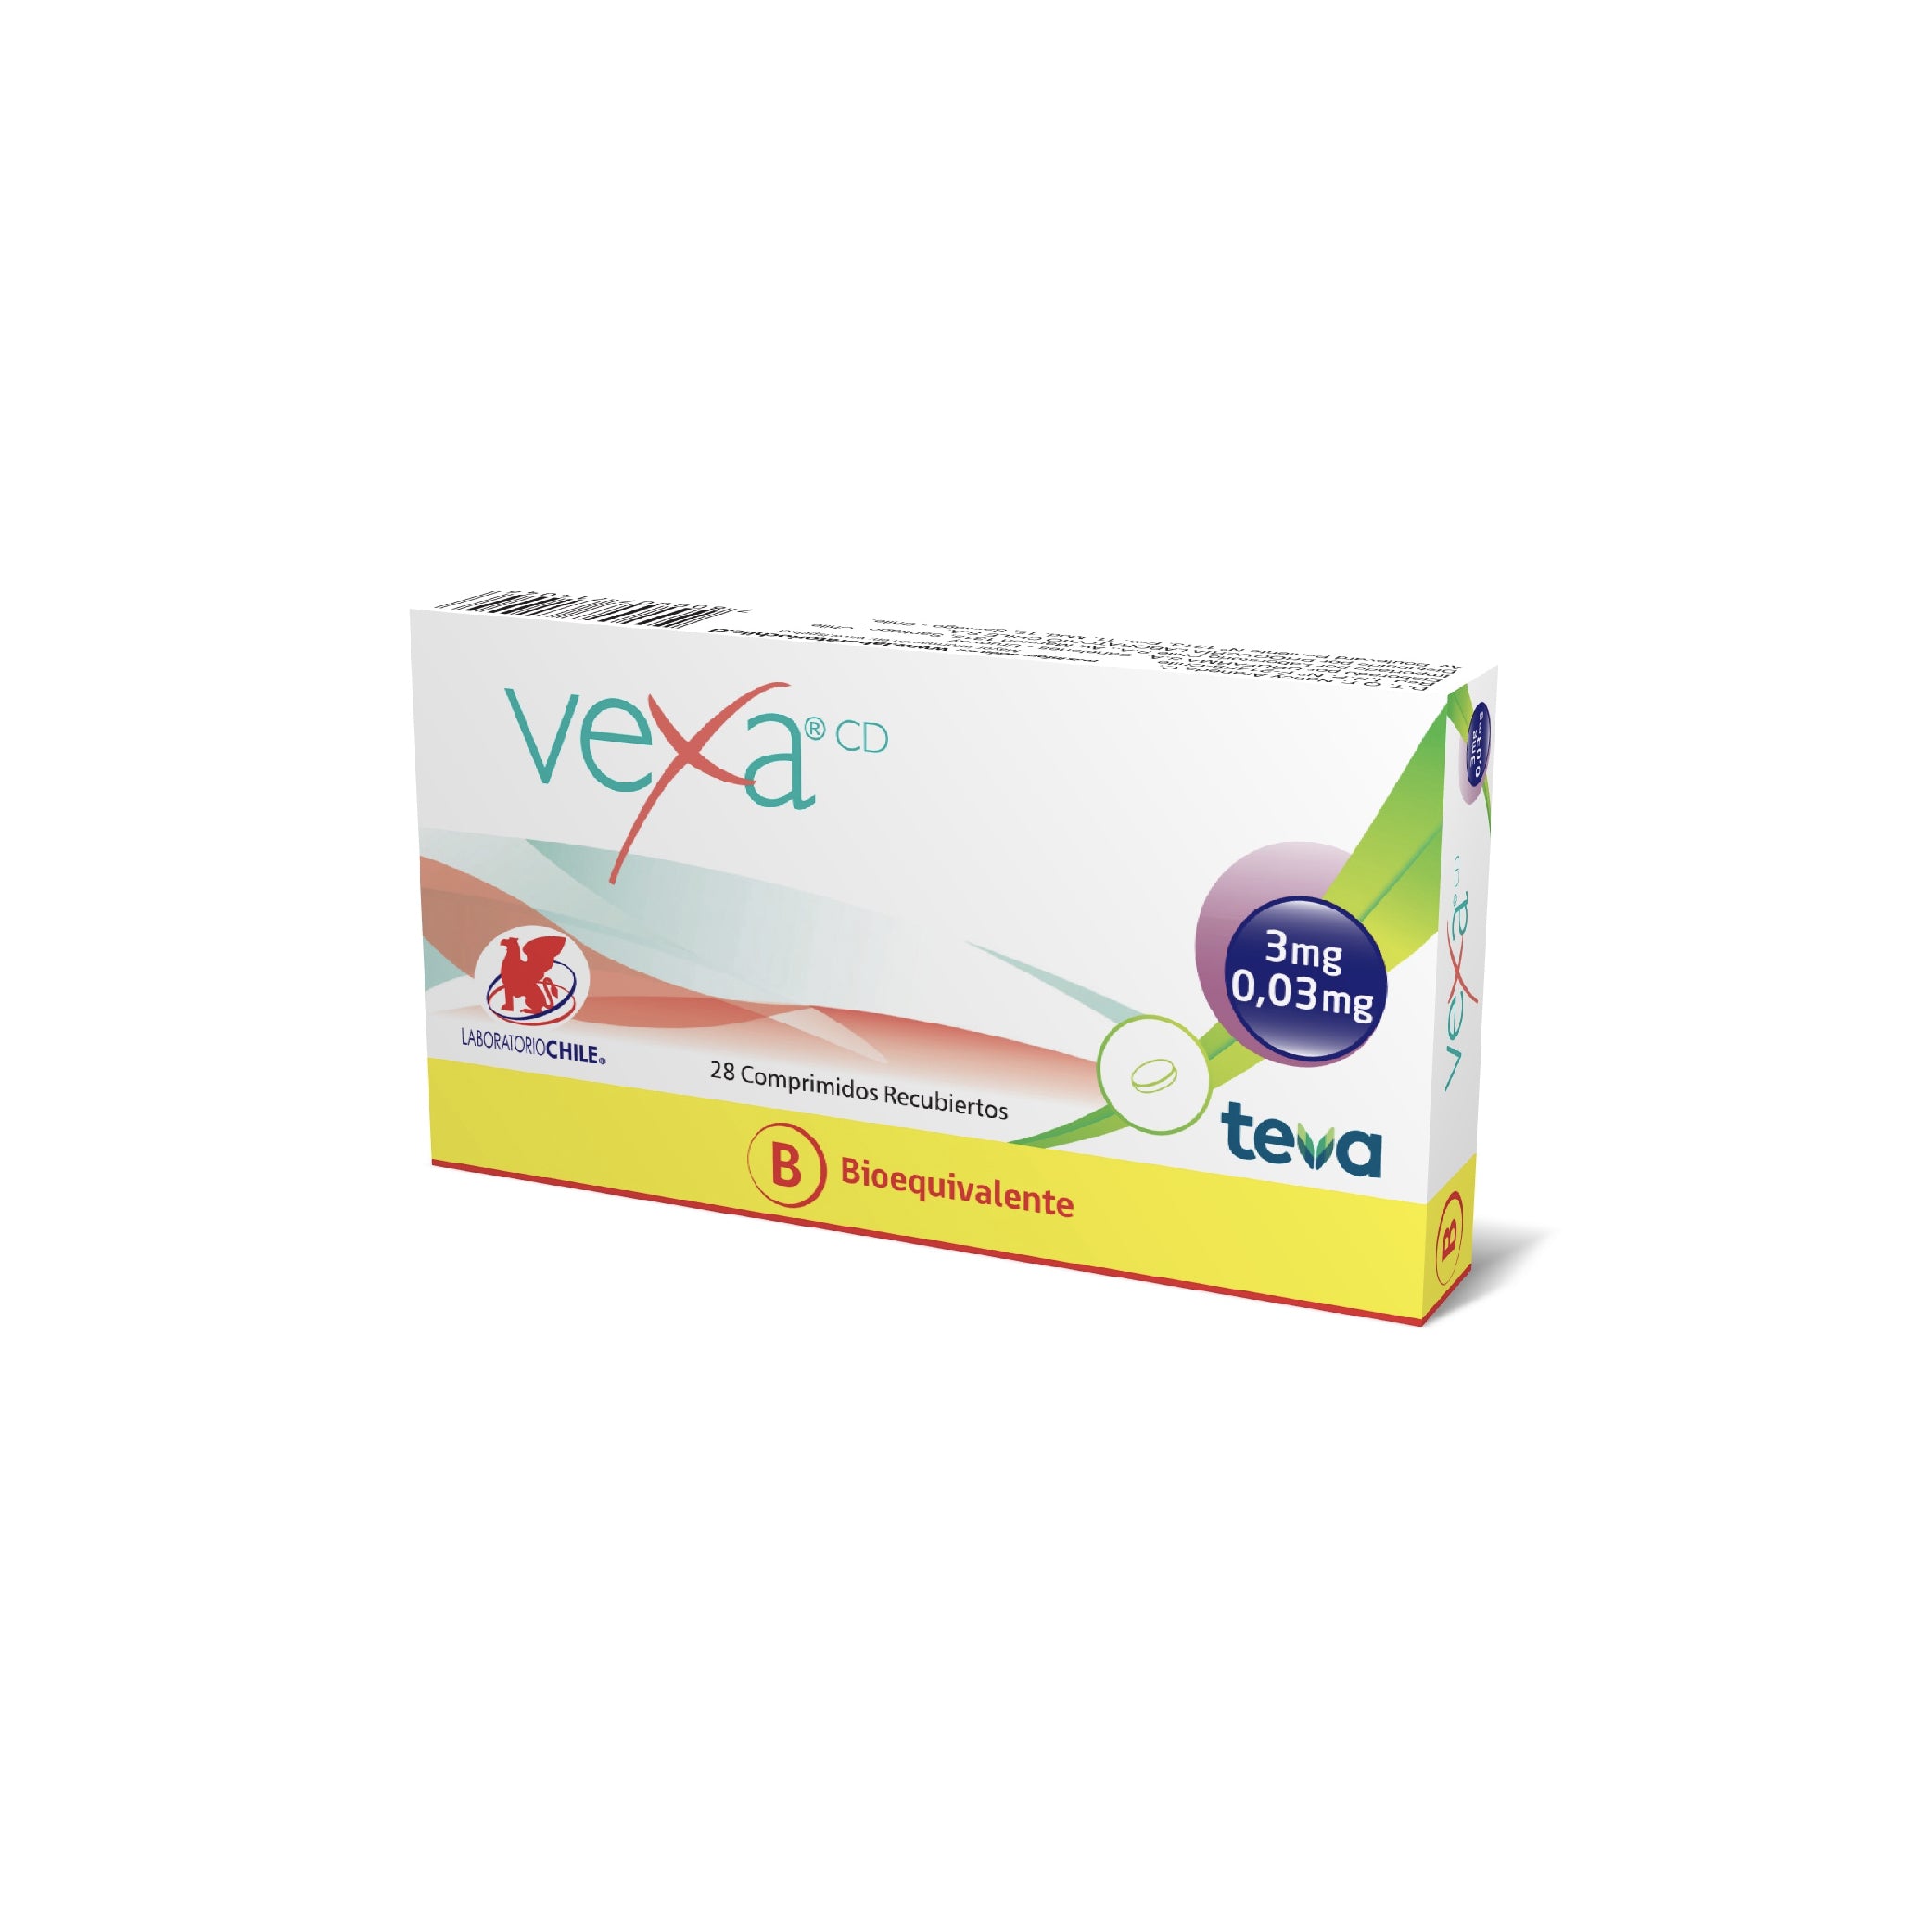 VEXA CD Est. Comp. Rec. x 28